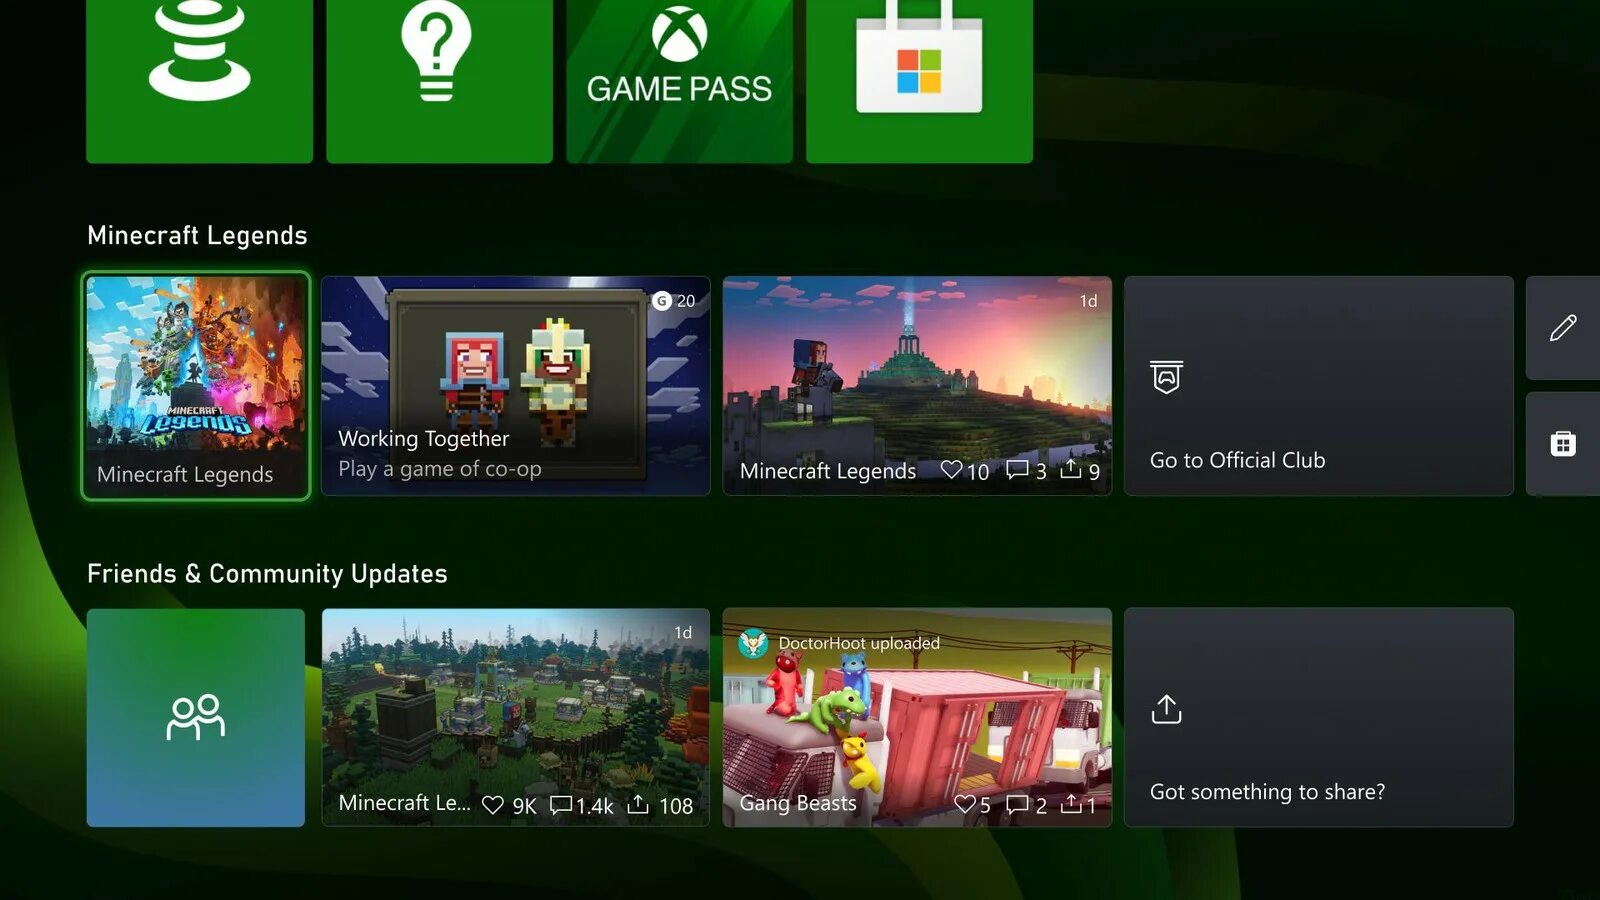 Как играть на одном экране xbox. Обновление хбокс. Обновлённый экран Xbox. Новый Xbox. Xbox новый экран.